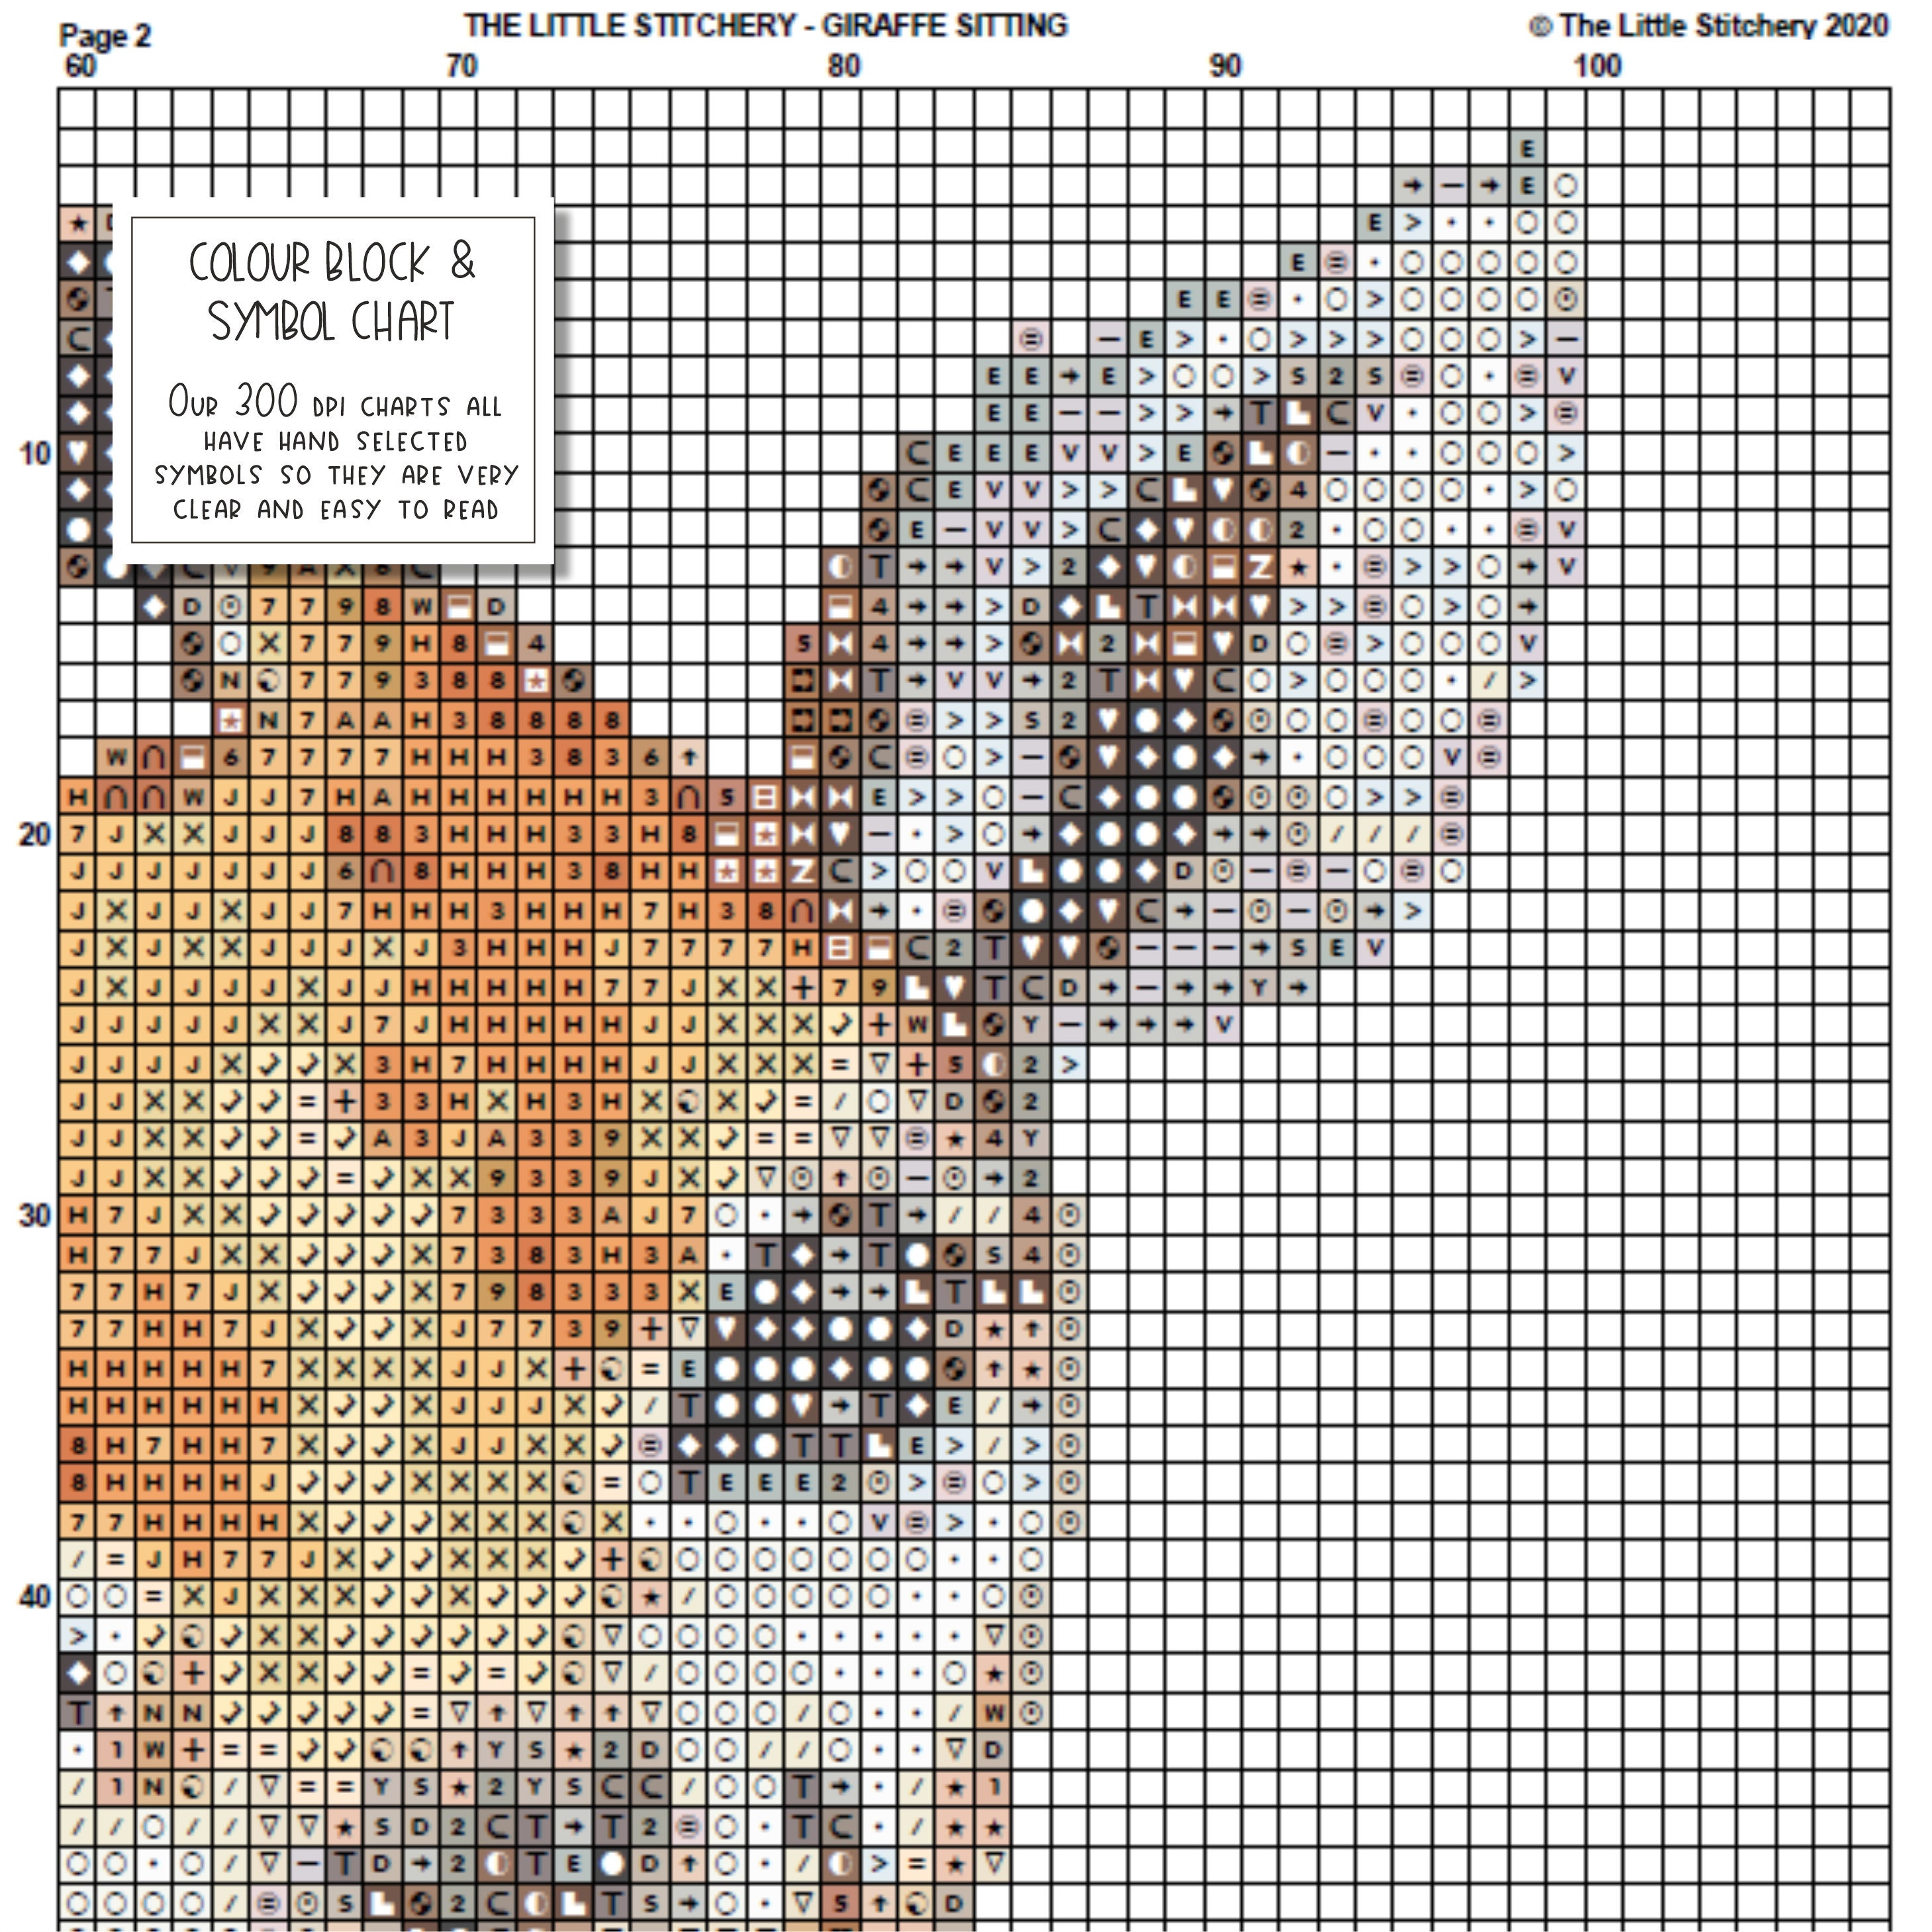 Giraffe Sitting Downloadable Cross Stitch Chart PDF Pattern | Etsy